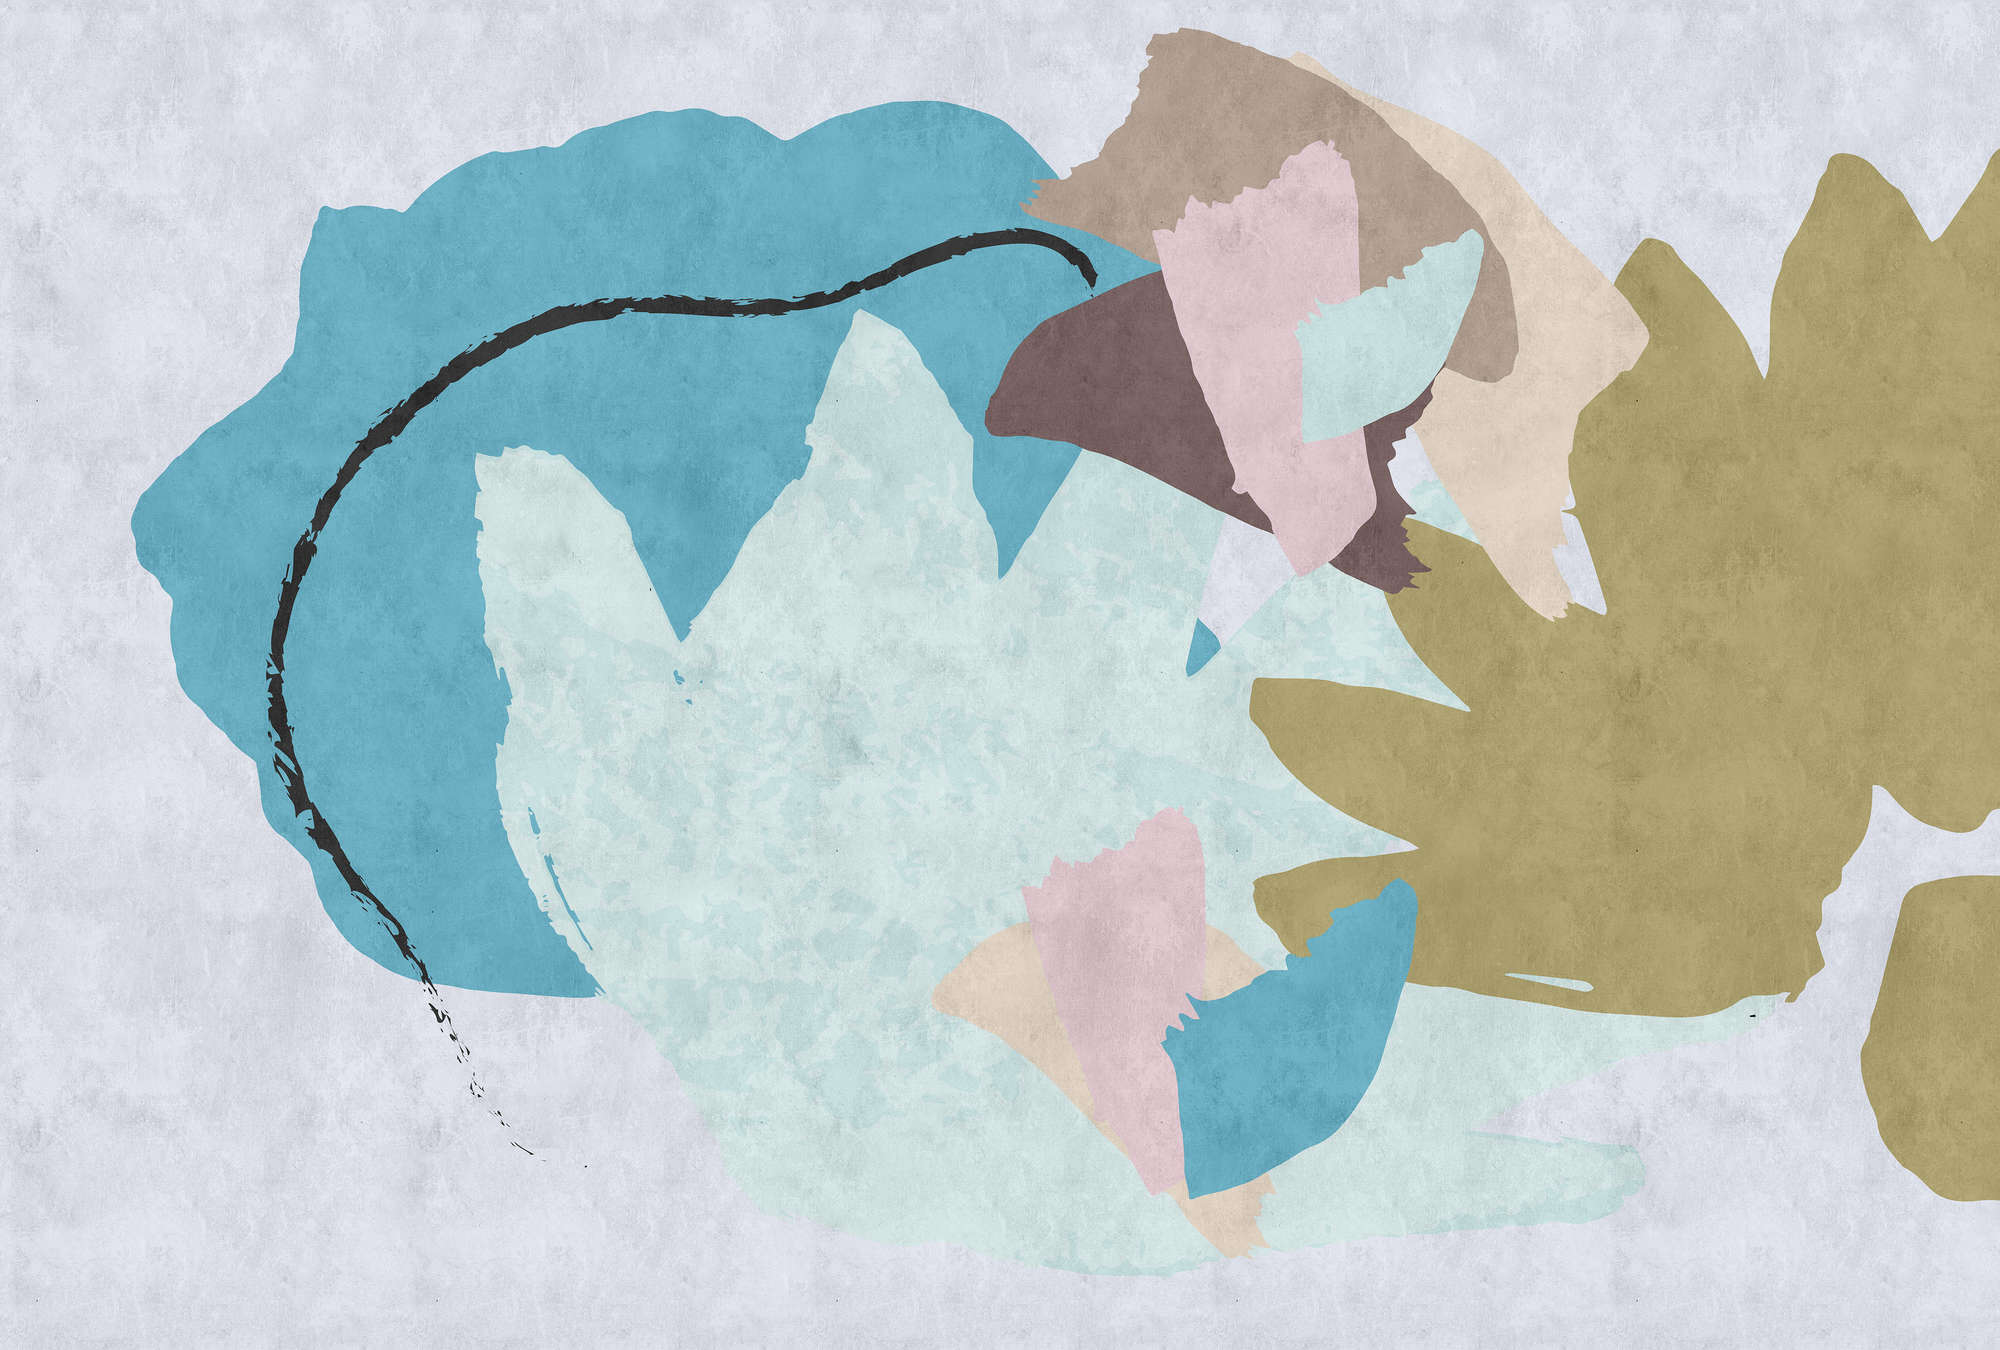             Collage Floral 1 - Papel pintado abstracto con impresión digital, estructura de papel secante colorido - Beige, Azul | Tejido no tejido liso mate
        